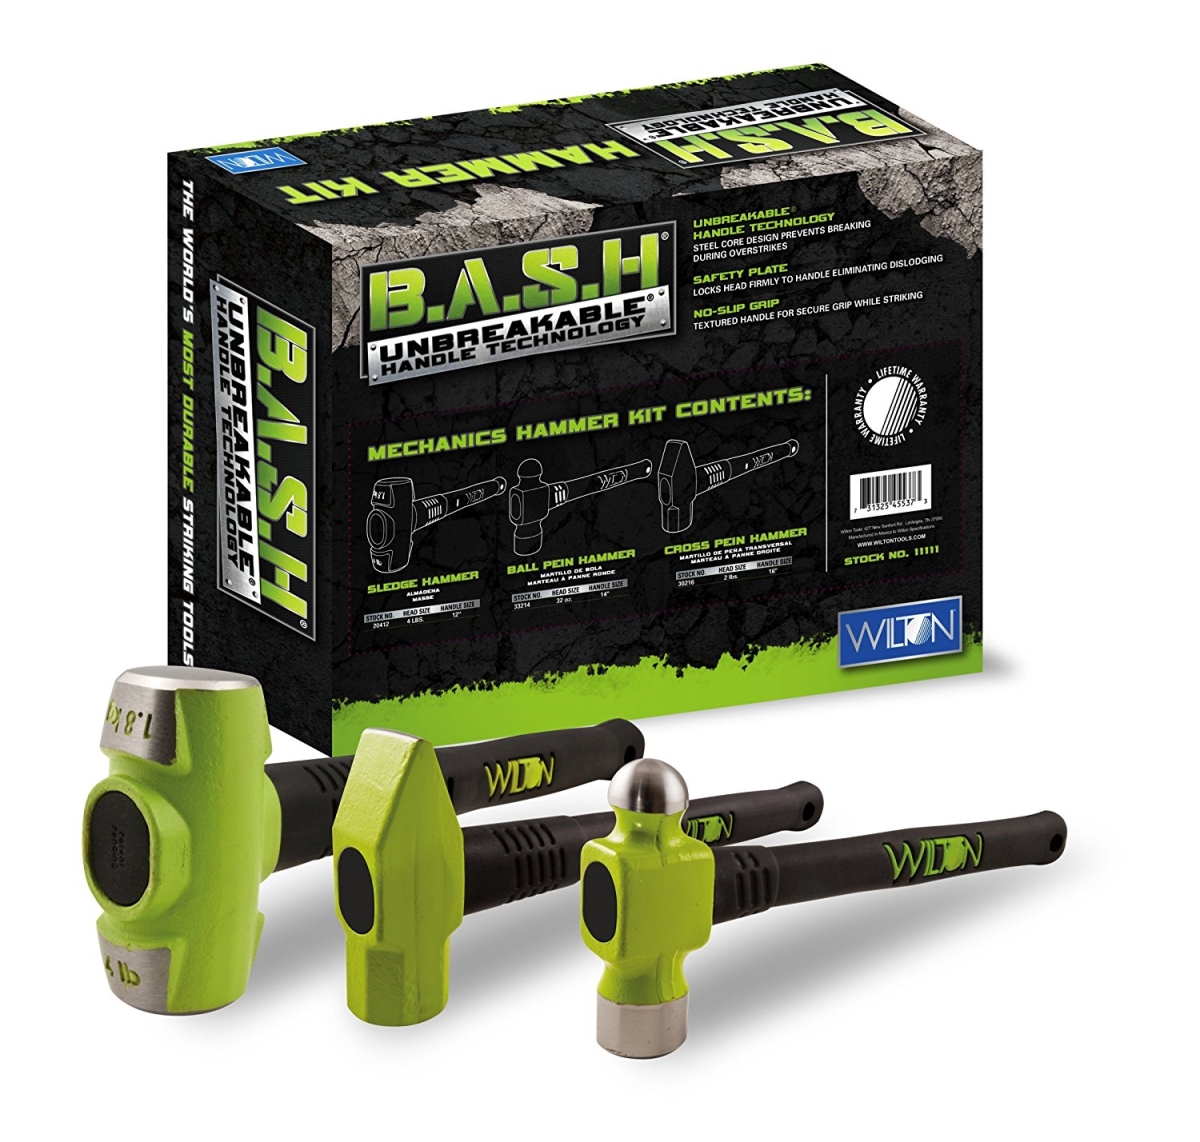 825-11112 Bash Shop Mechanics Hammer Kit